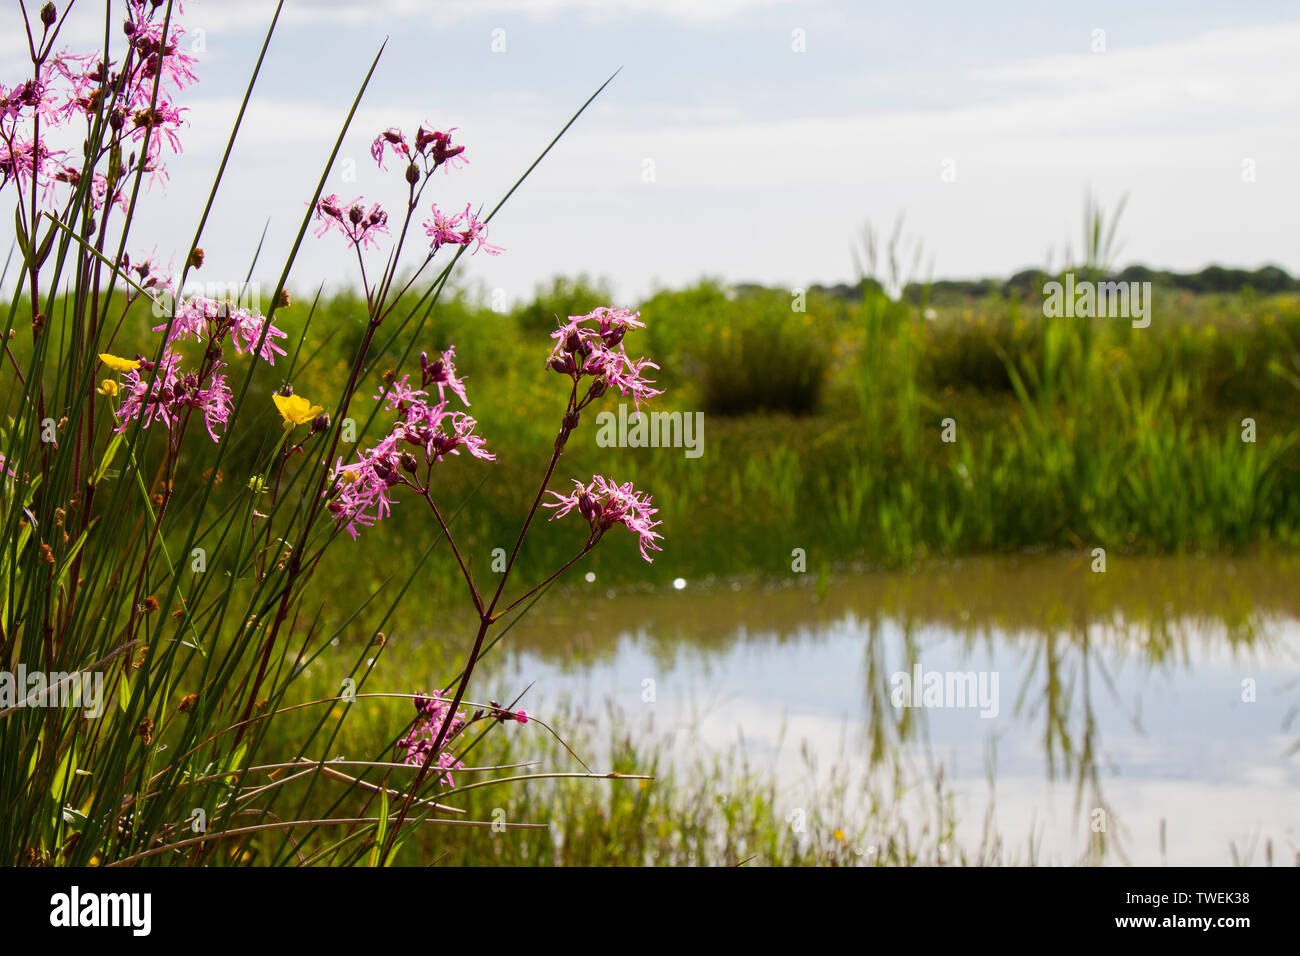 Ragged robin in flower beside pond in wildflower meadow Stock Photo